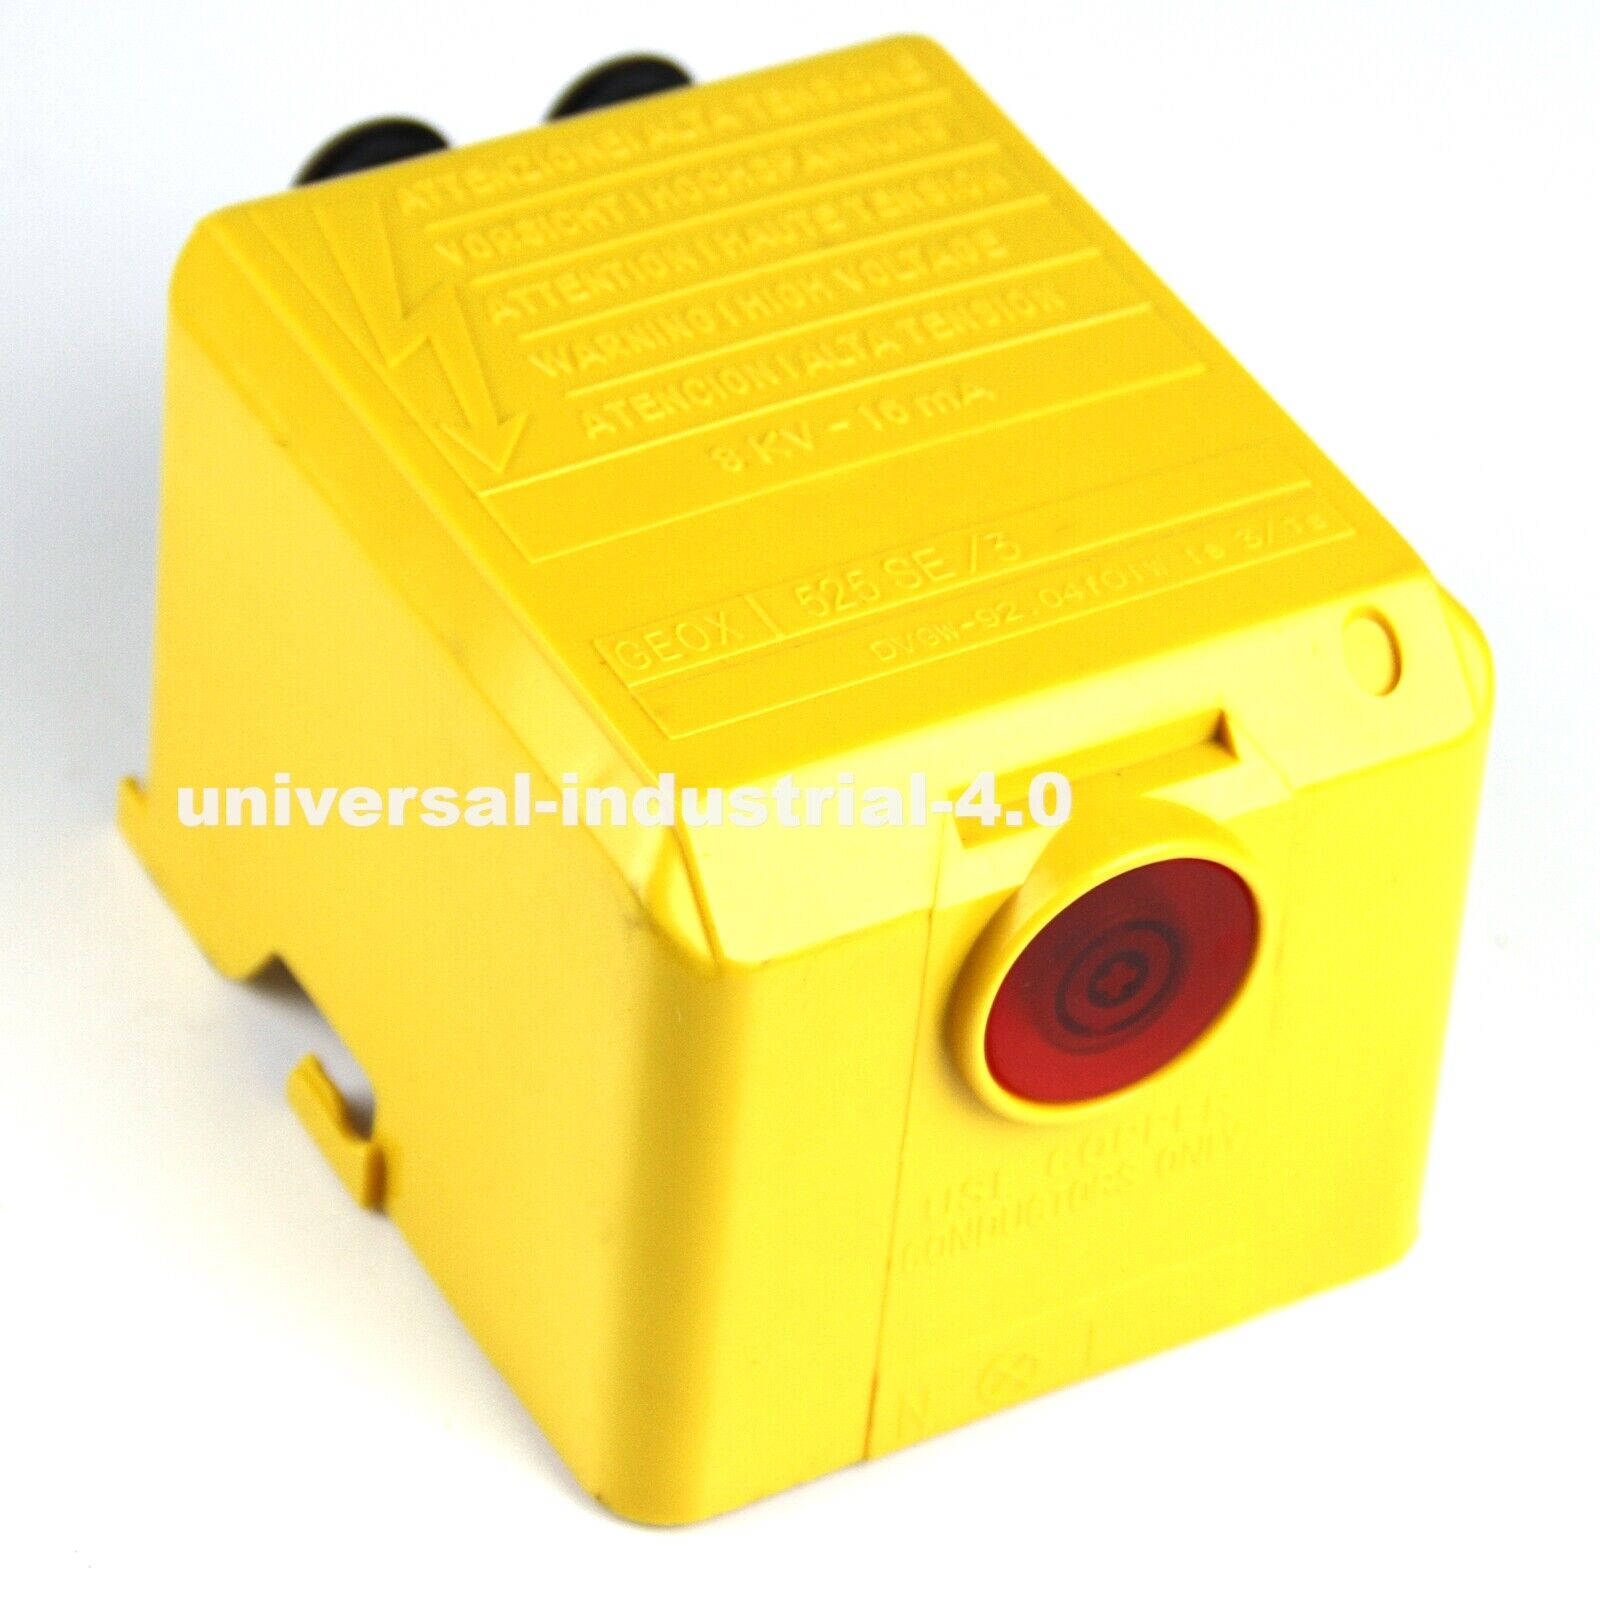 RIELLO 525SE Control Box Oil Burner Controller